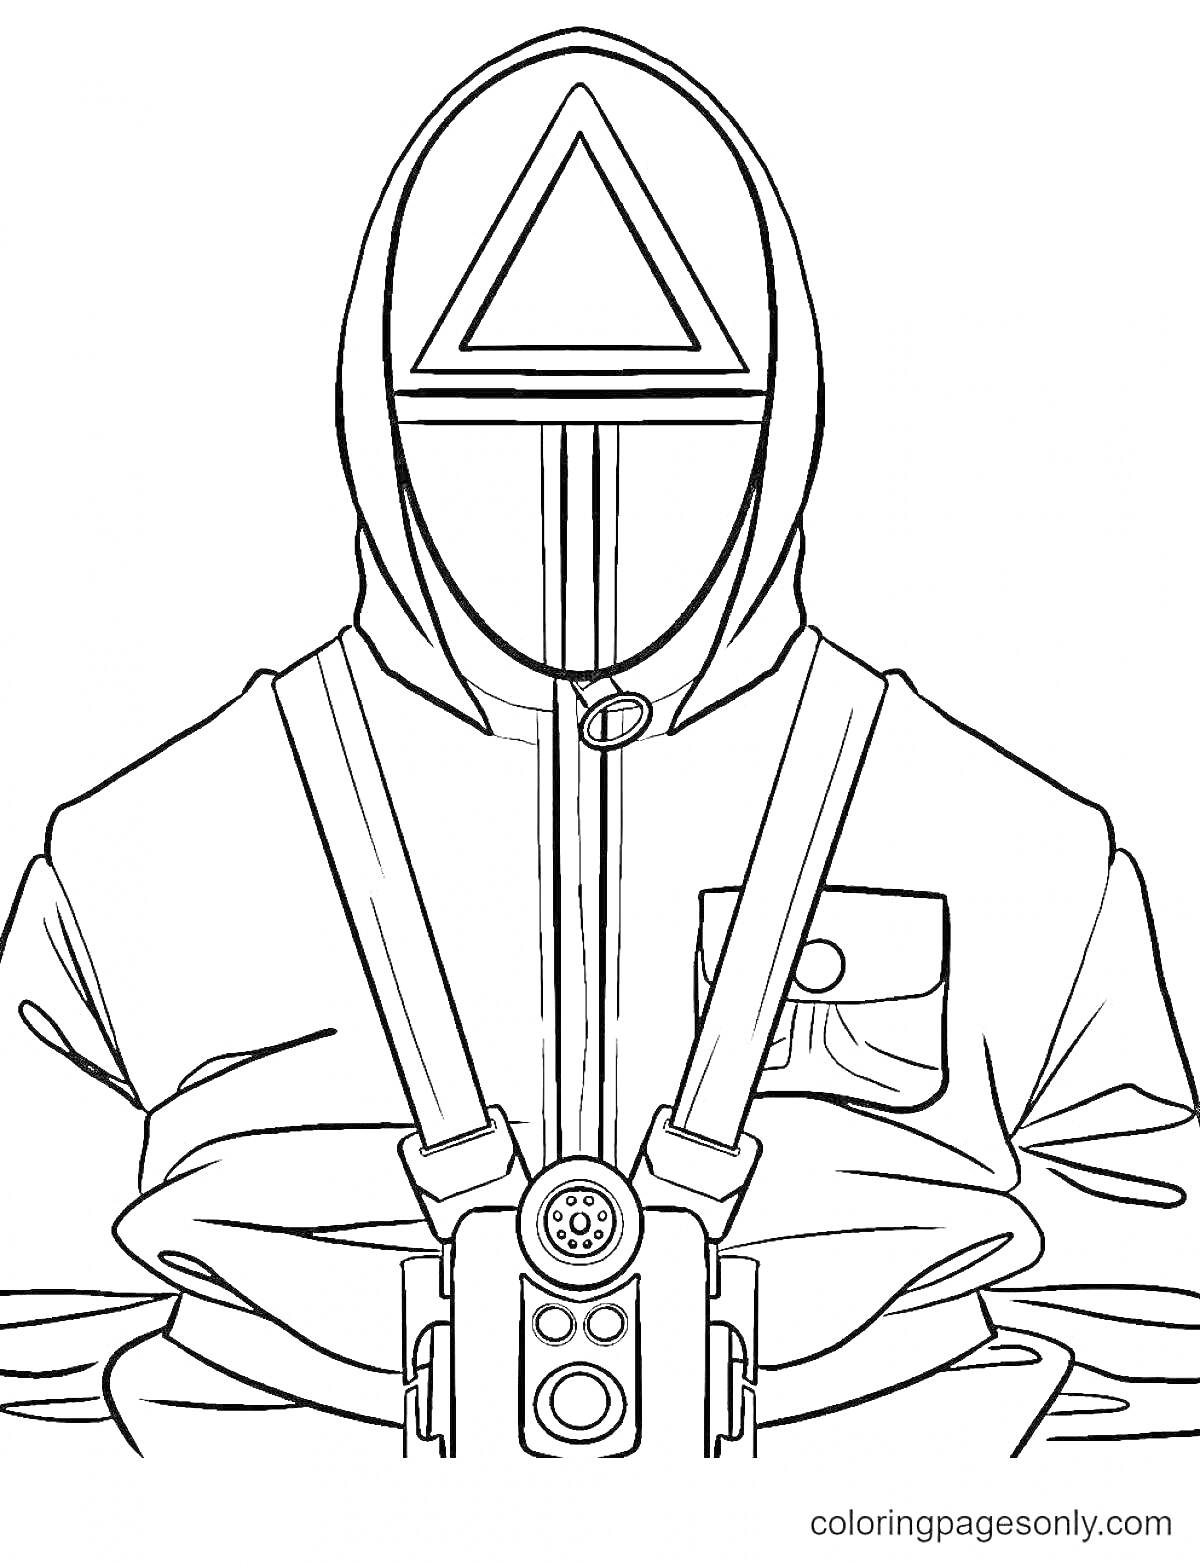 Раскраска Охранник в маске с треугольником из игры в кальмара, в форме с ремнями и камерой на груди